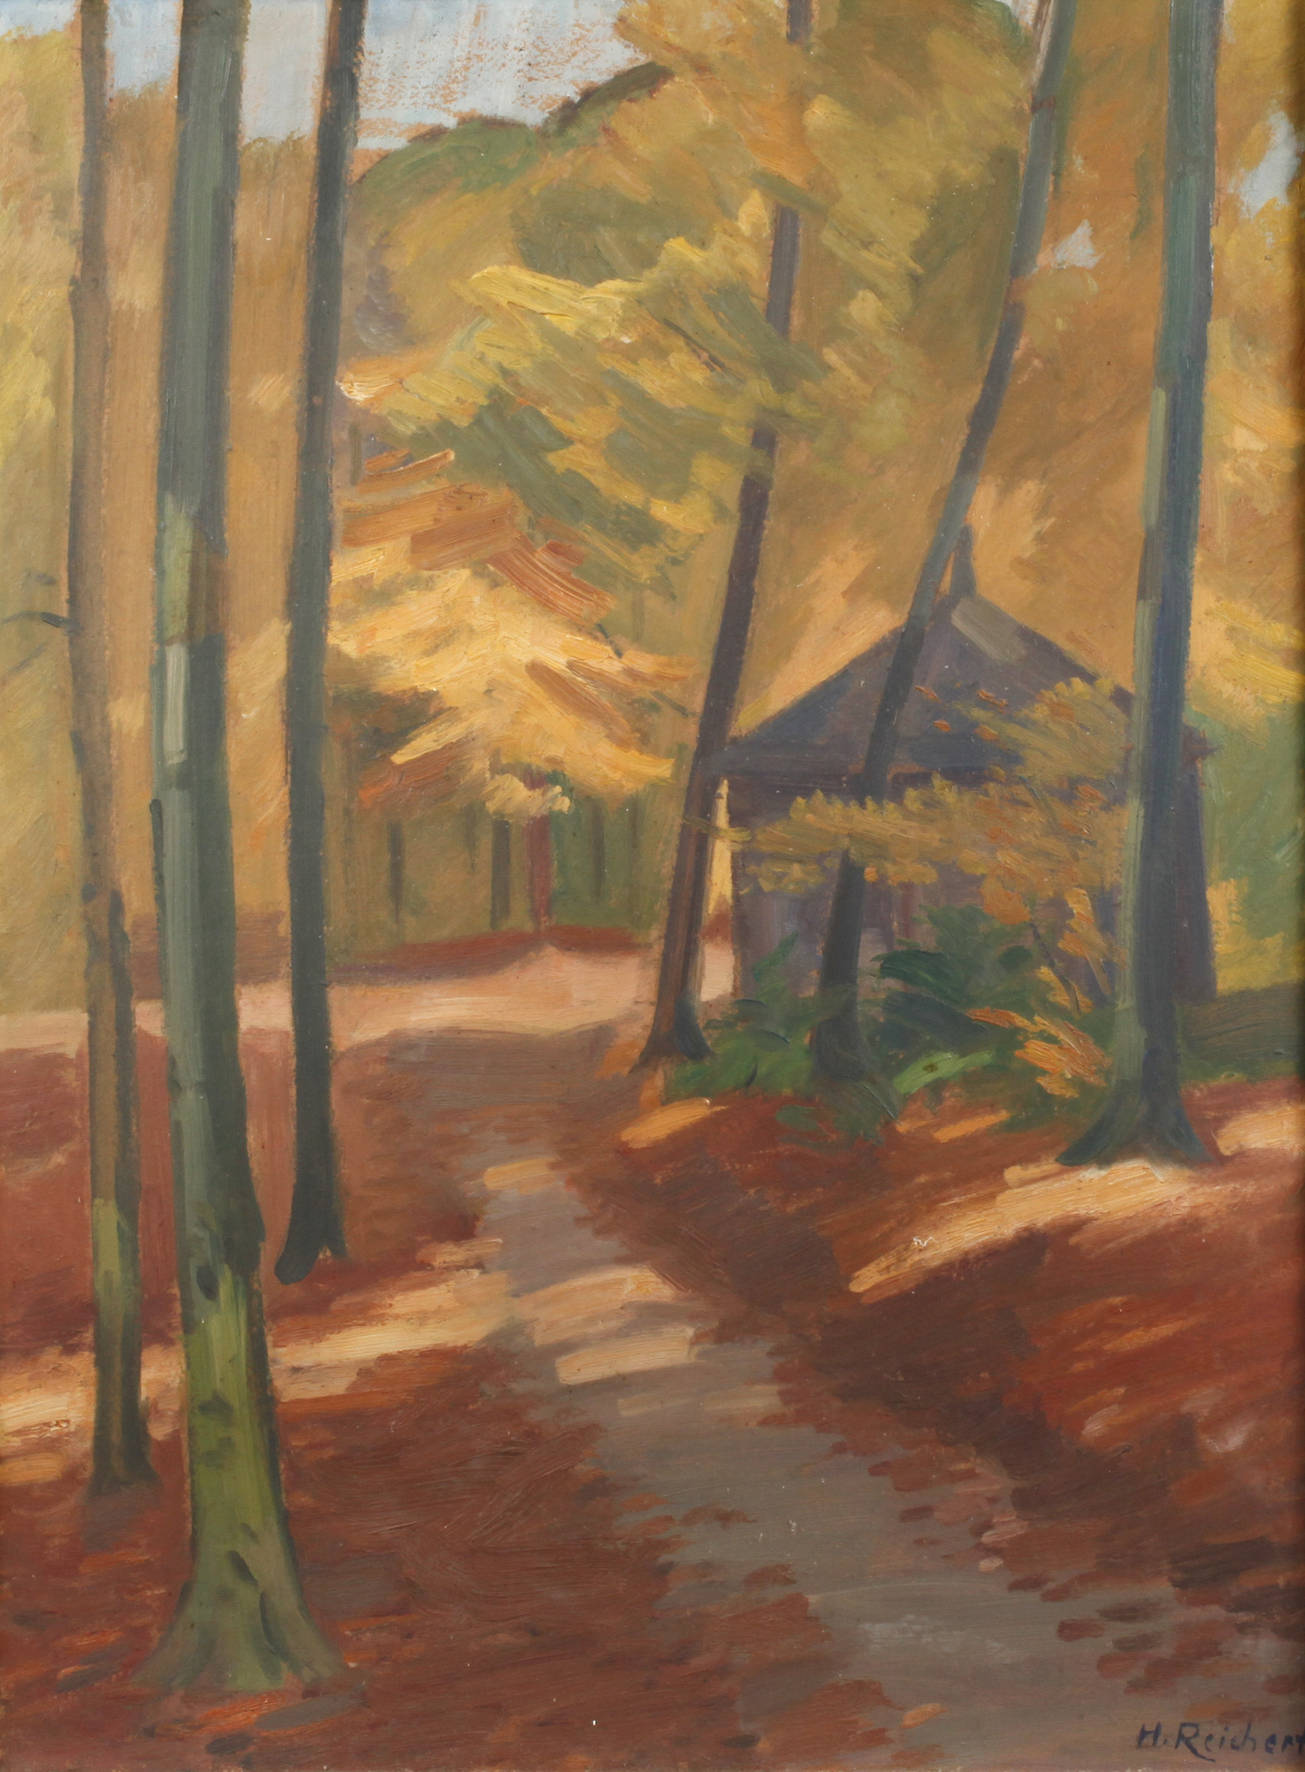 H. Reichert, ”Herbst im Boyserwald”